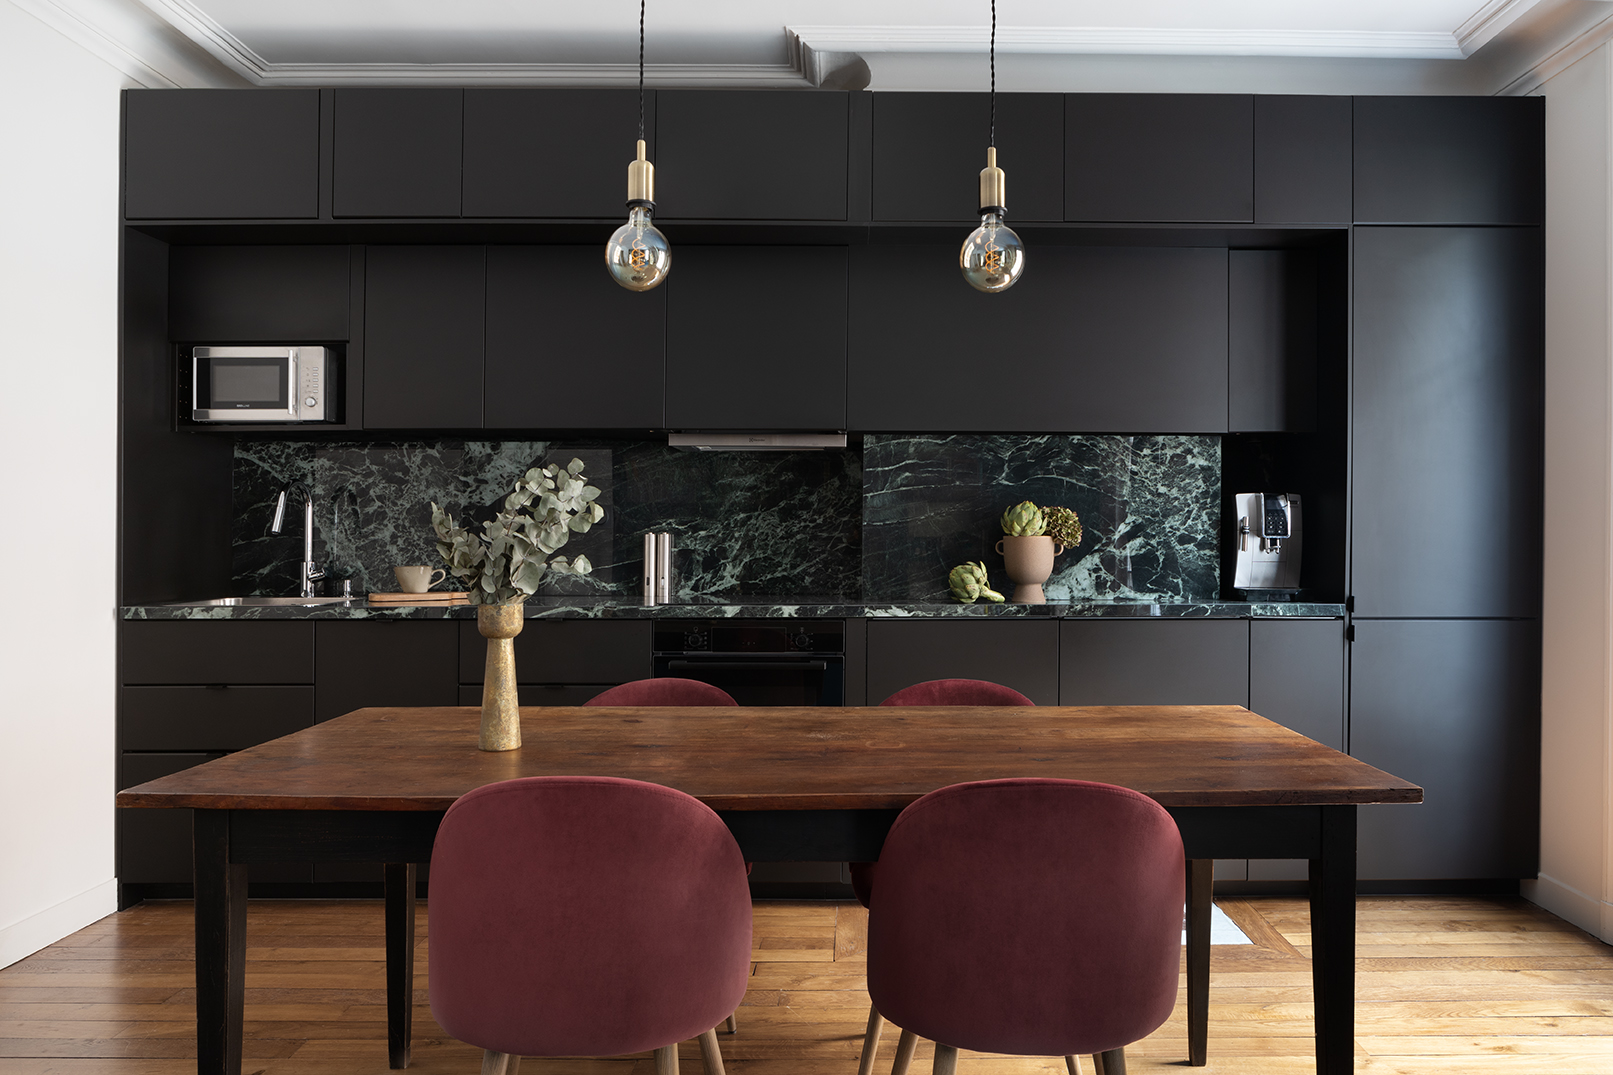 Studio Dallas cuisine noire et marbre vert, moulures, parquet ancien, appartement parisien